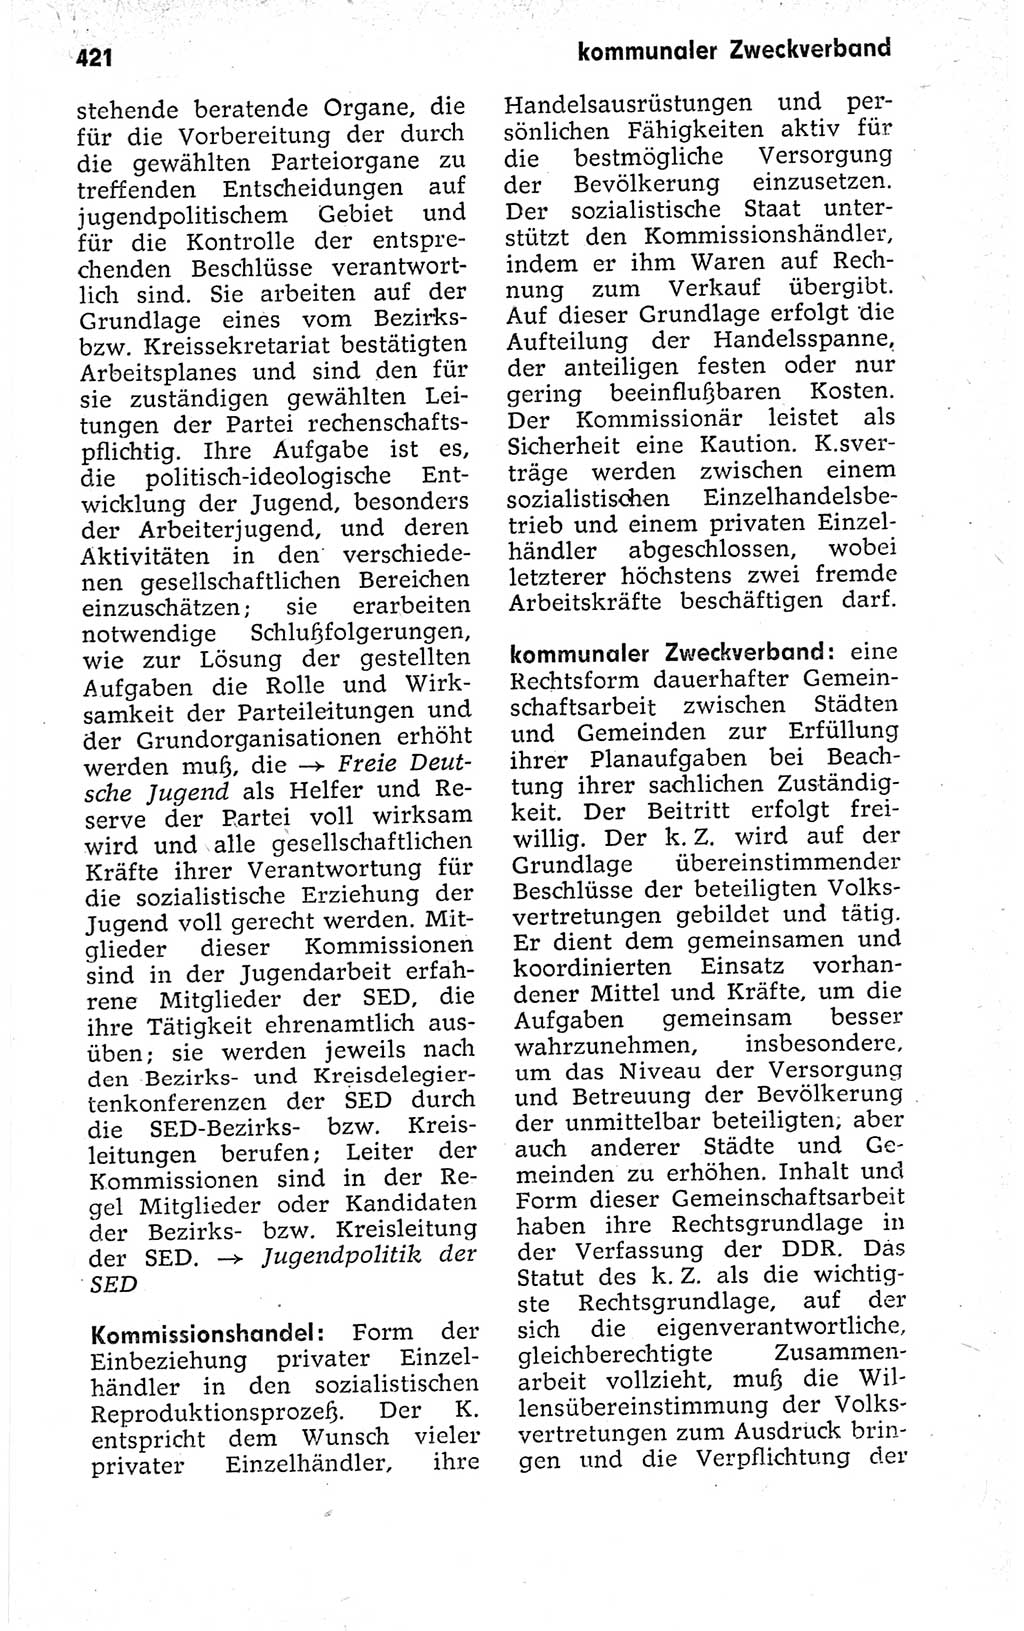 Kleines politisches Wörterbuch [Deutsche Demokratische Republik (DDR)] 1973, Seite 421 (Kl. pol. Wb. DDR 1973, S. 421)